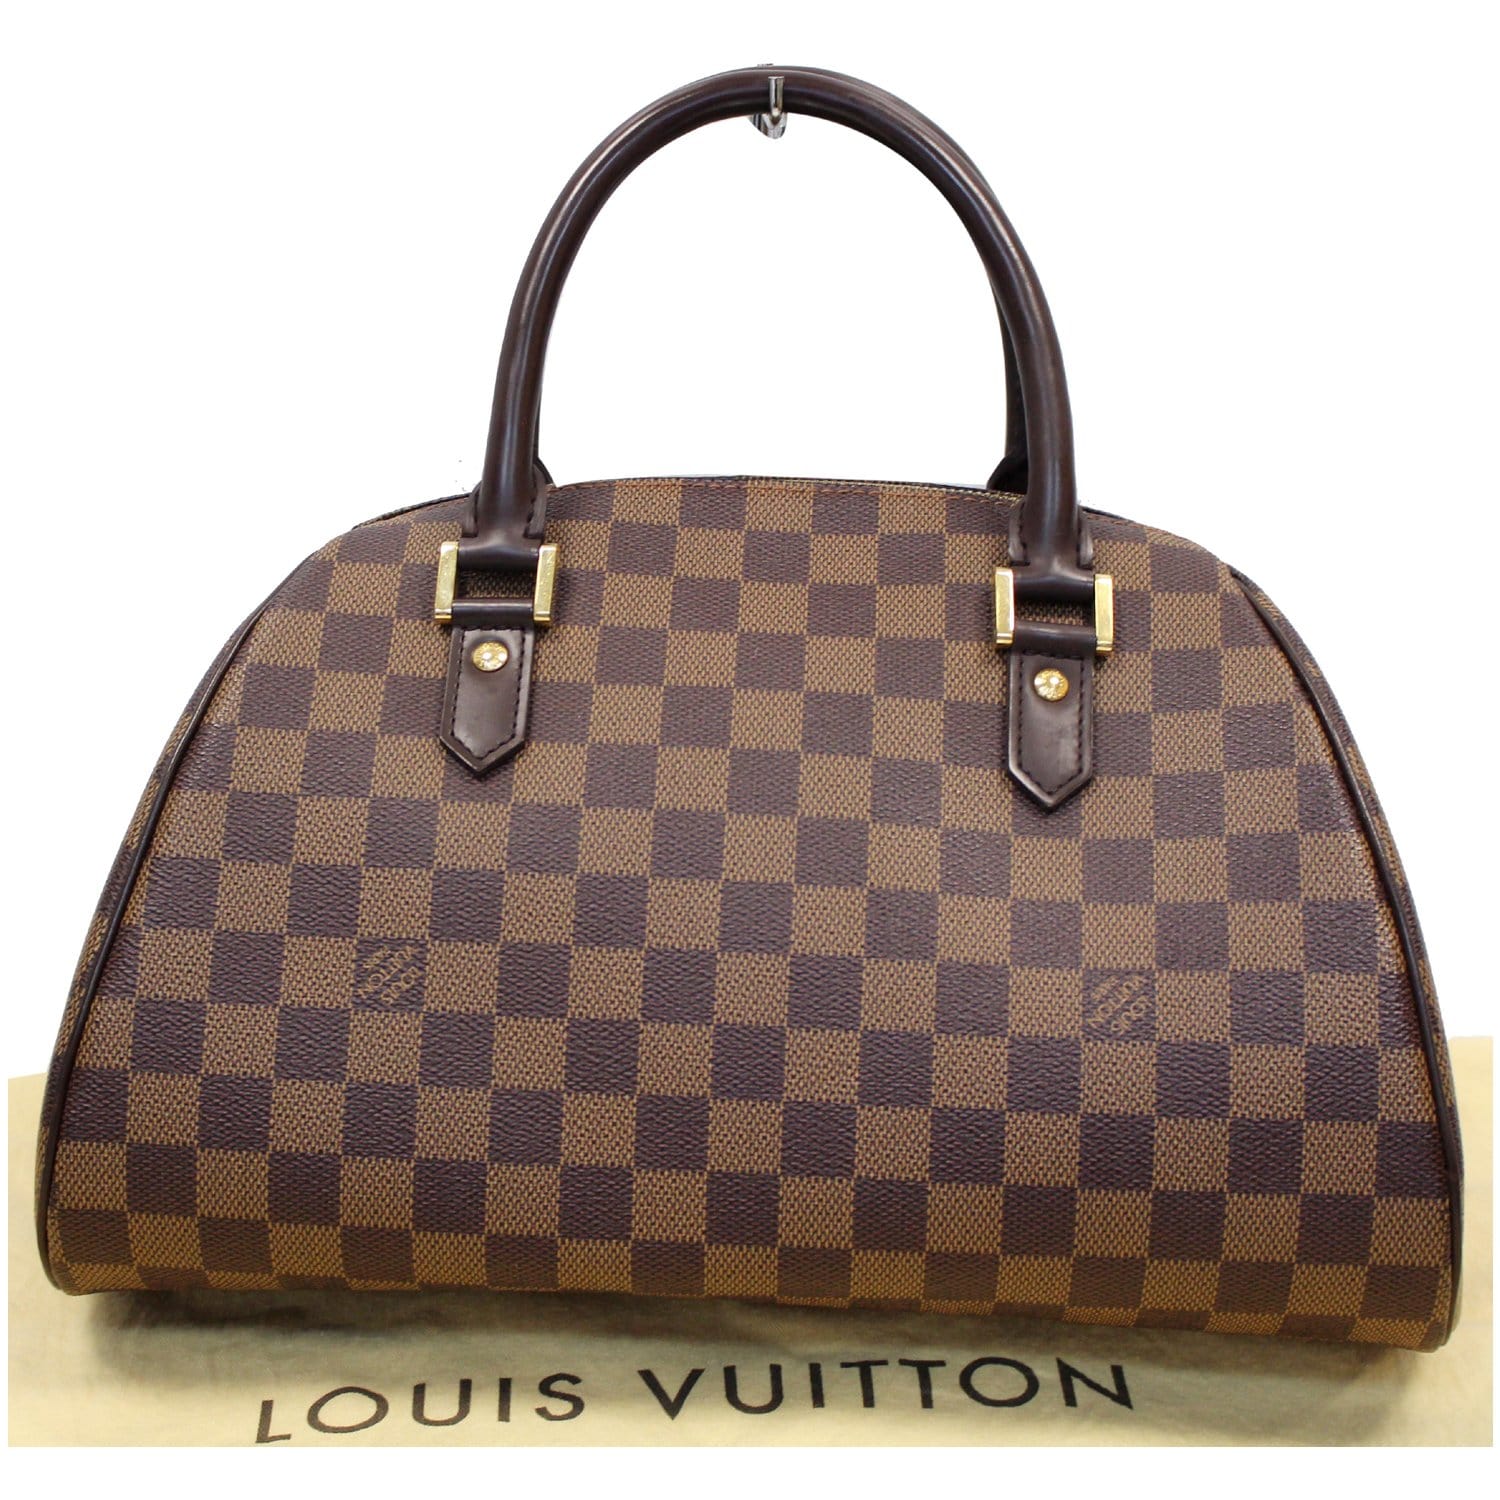 Authentic Louis Vuitton Damier Ebene Riviera MM